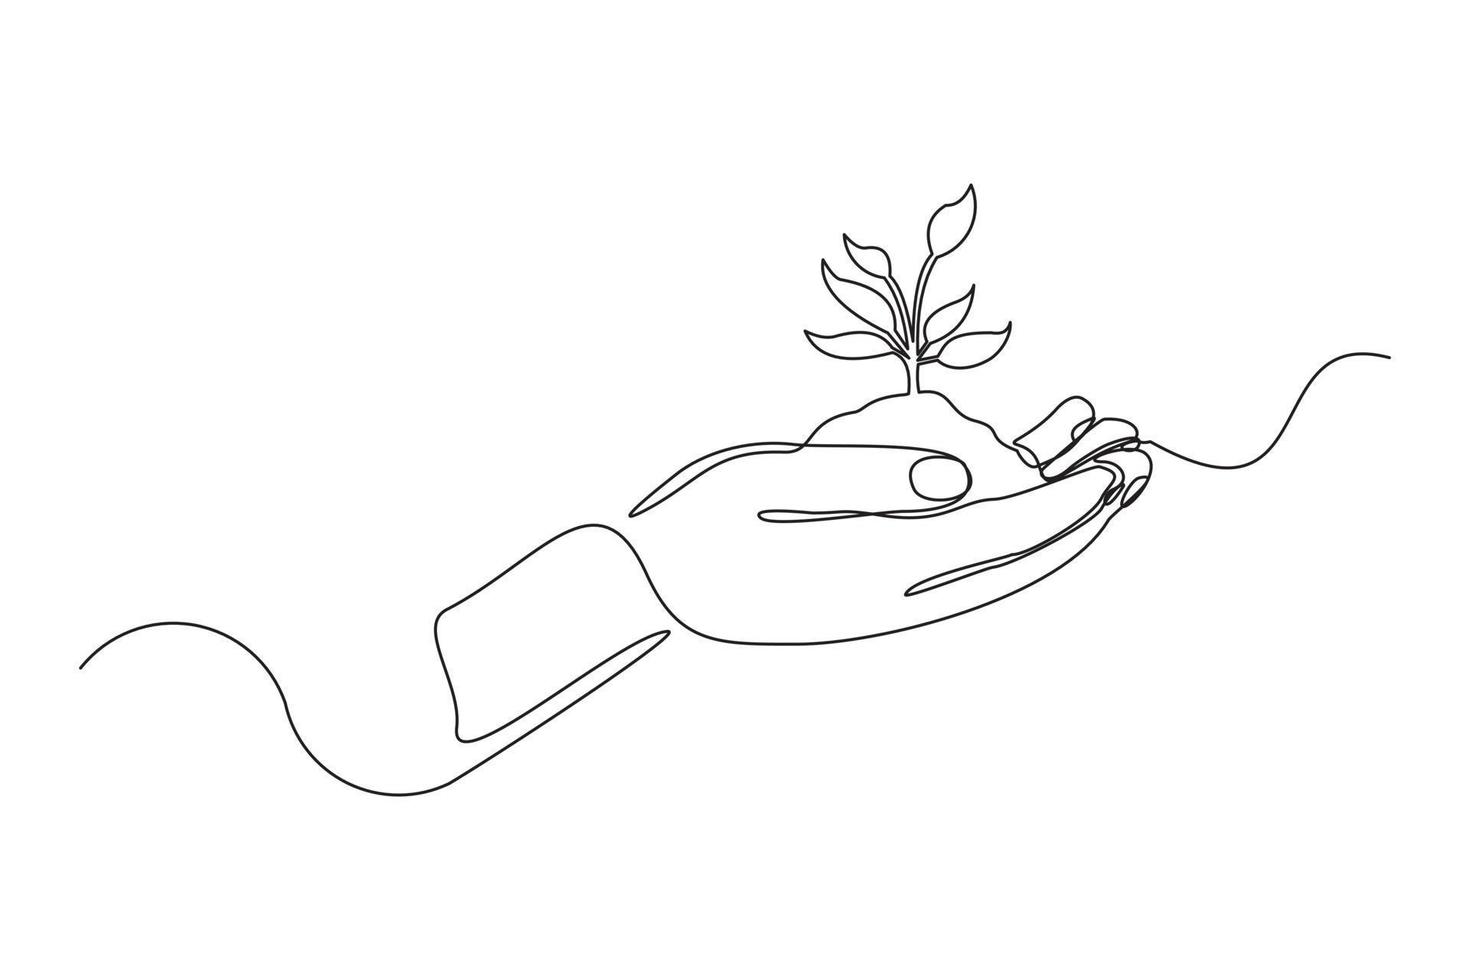 mano de palma de dibujo de una línea continua sosteniendo una planta joven verde. árbol de sujeción de una sola línea. Ilustración gráfica de vector de diseño de concepto de conservación forestal